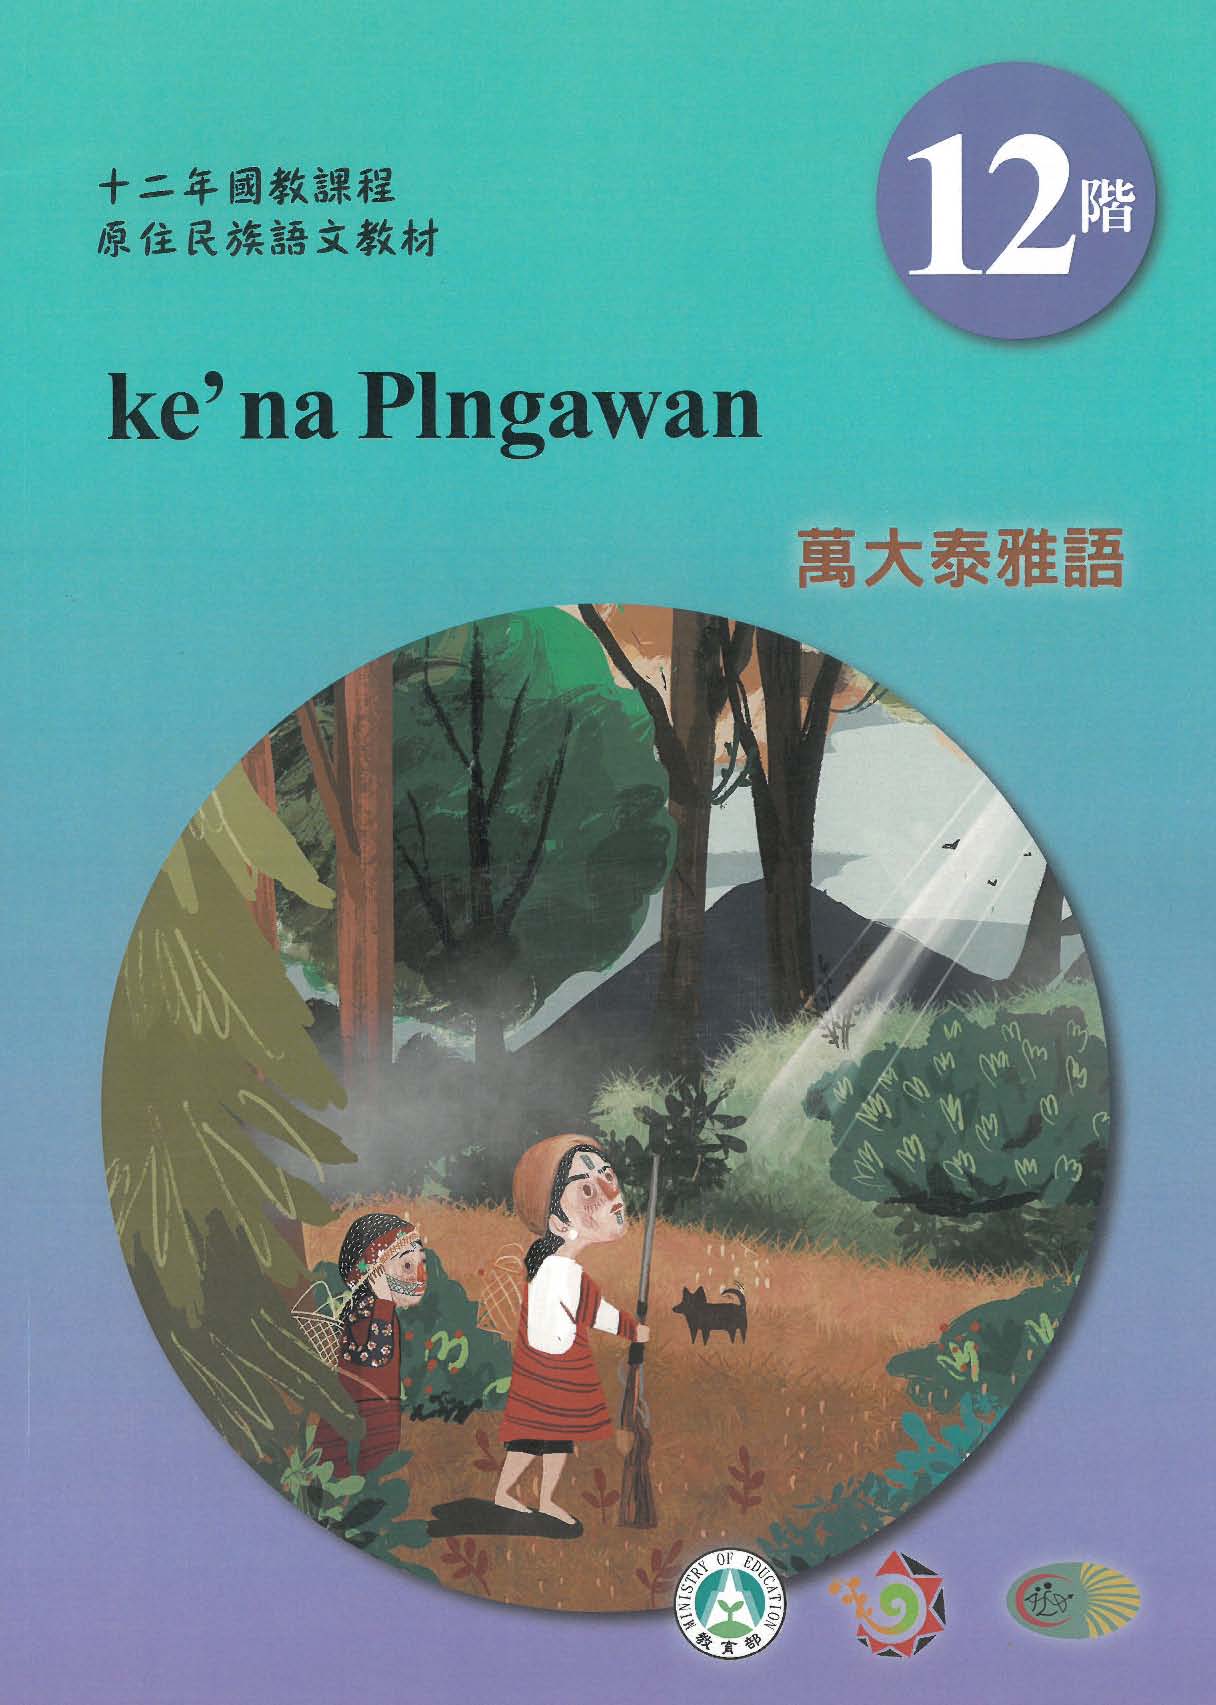 十二年國教原住民族語文教材 萬大泰雅語 學習手冊 第12階